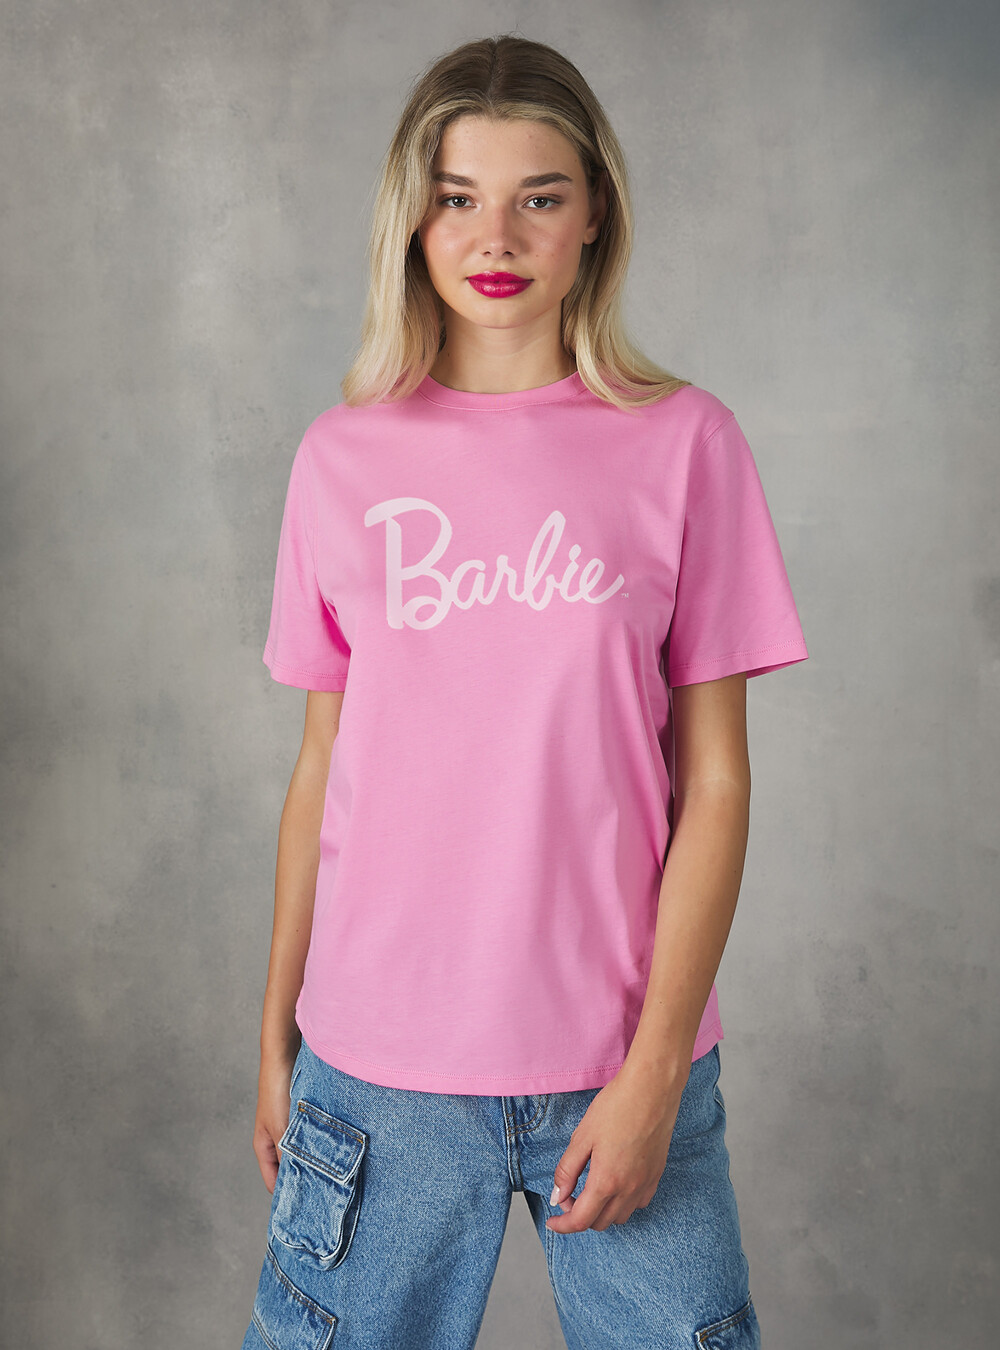 Camiseta Barbie / Alcott